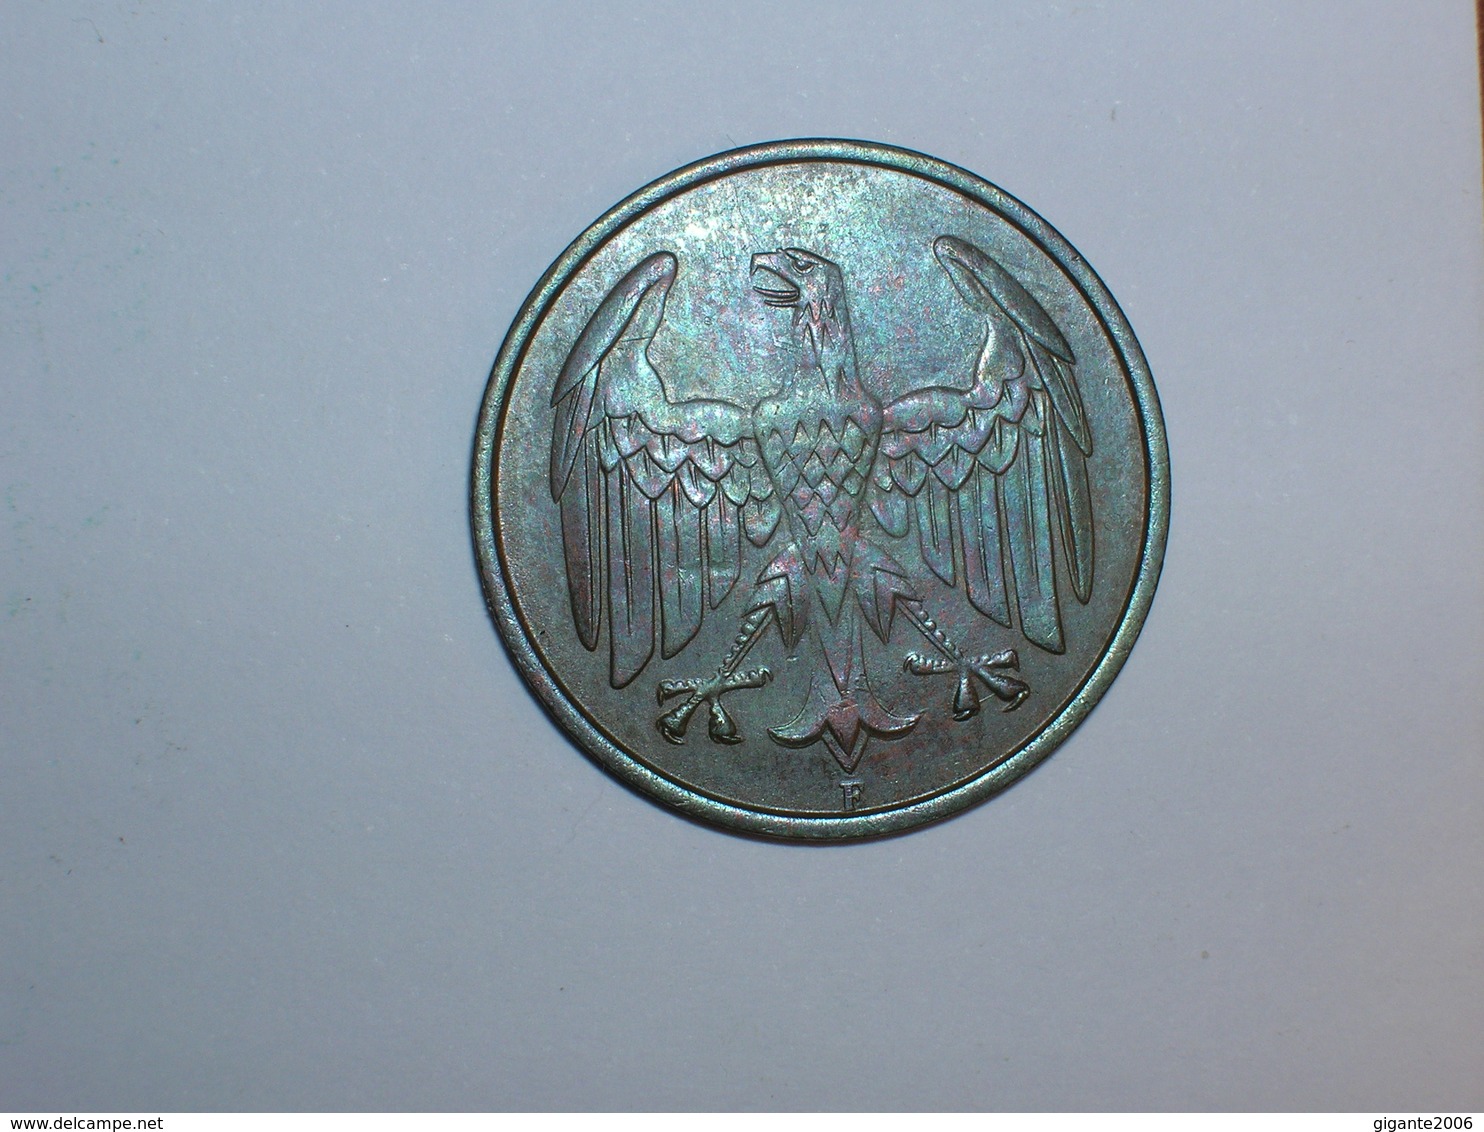 ALEMANIA 4 PFENNIG 1932 F (1271) - 4 Reichspfennig